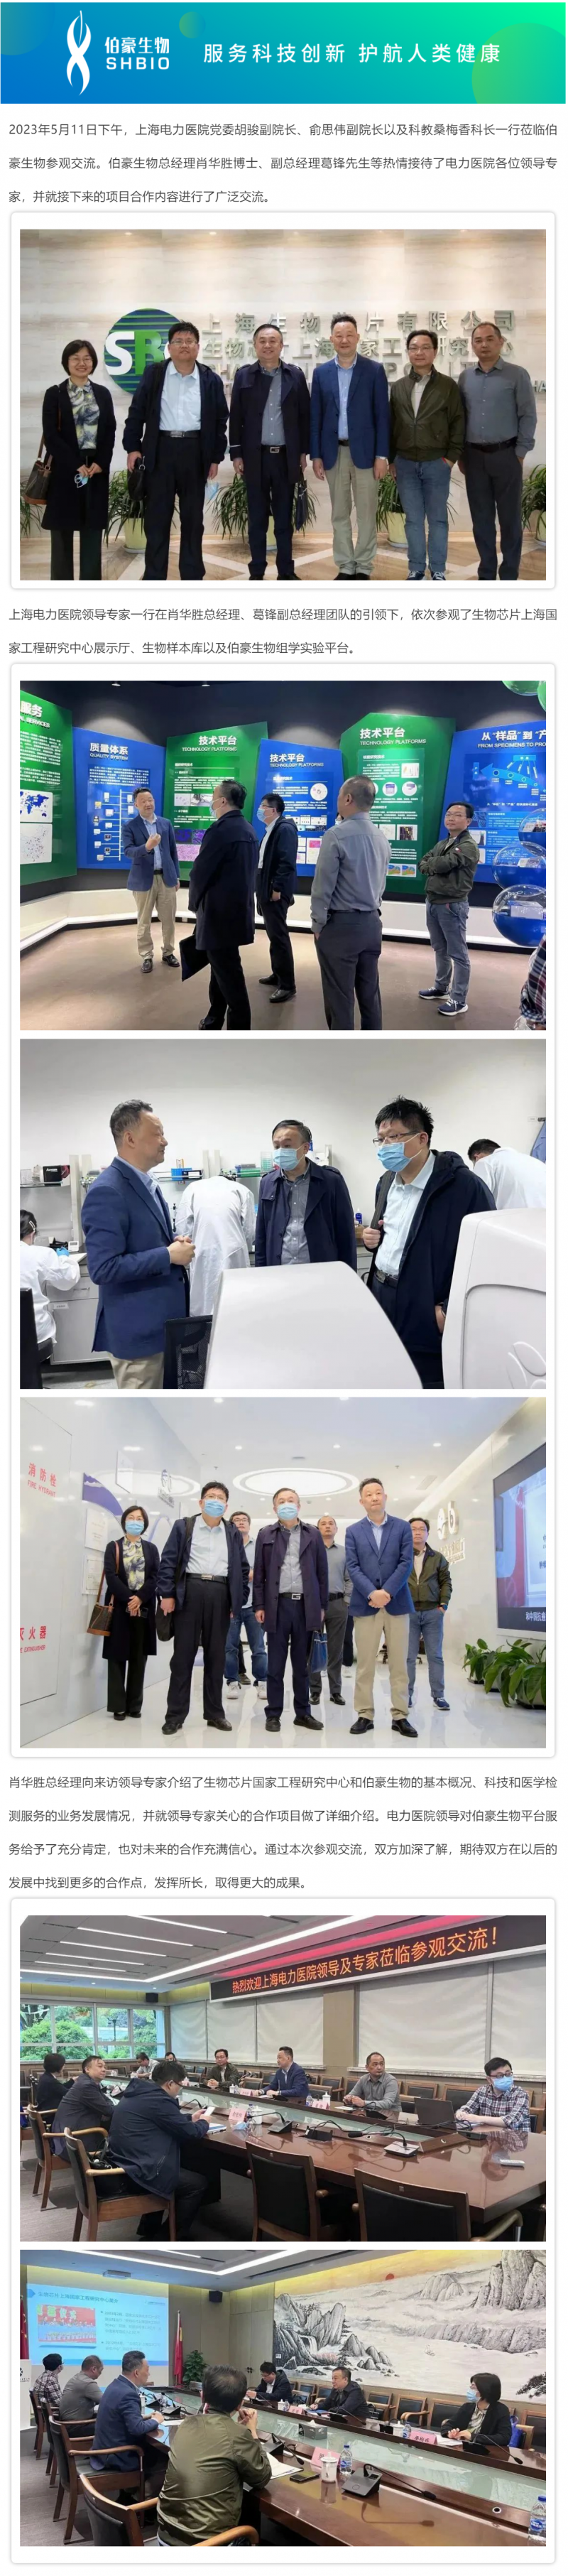 热烈欢迎上海电力医院领导和专家莅临参观交流